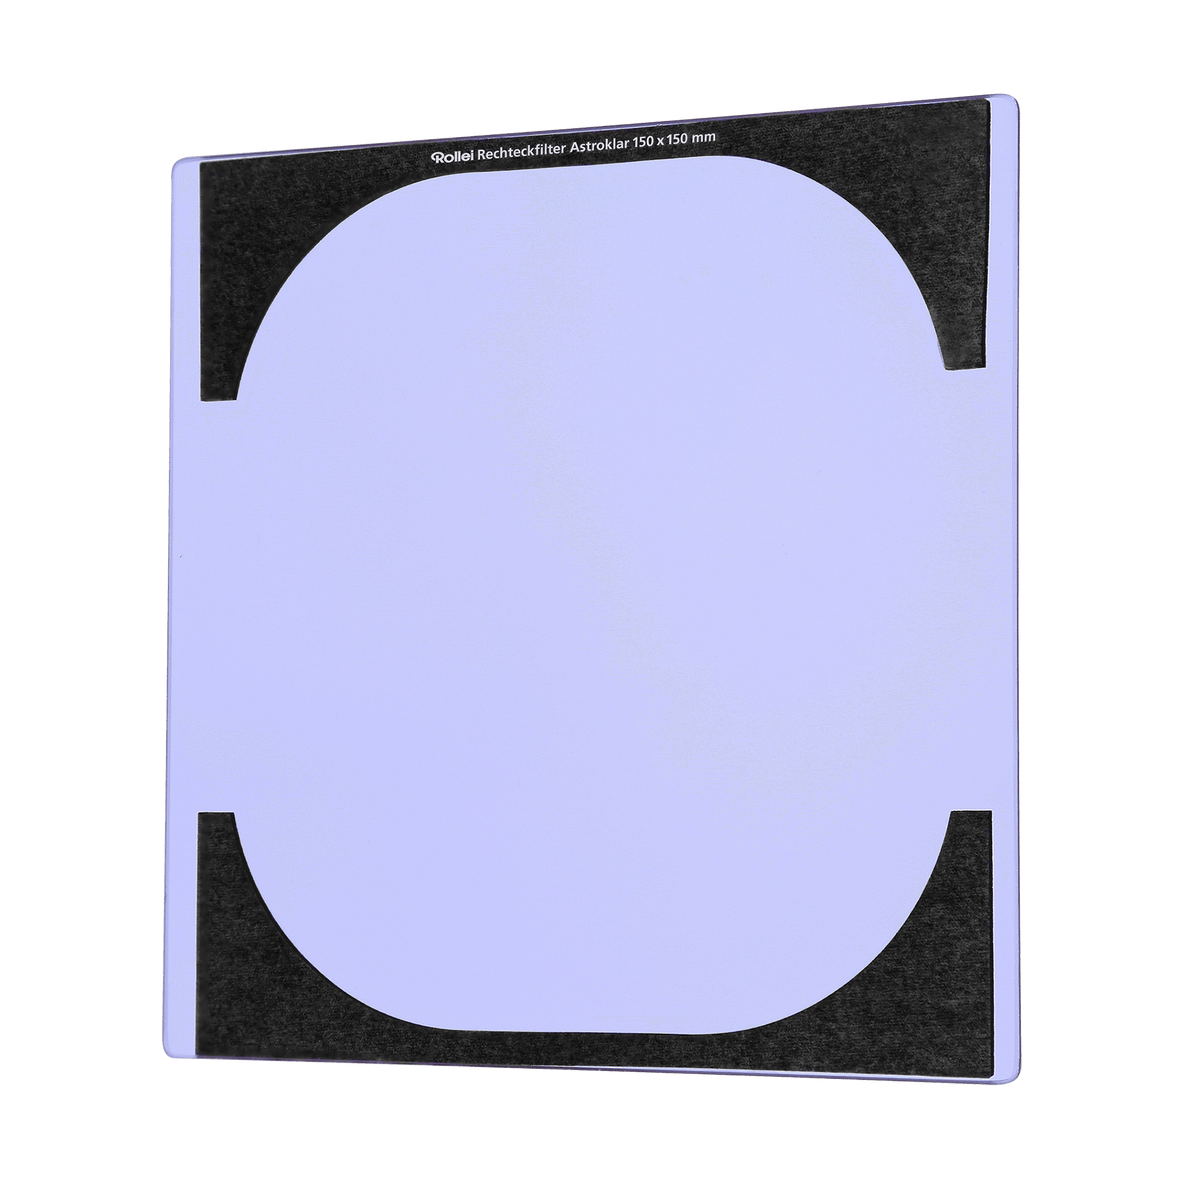 Rollei Filter Astroklar Rechteckfilter - Nachtlicht Filter 150 mm